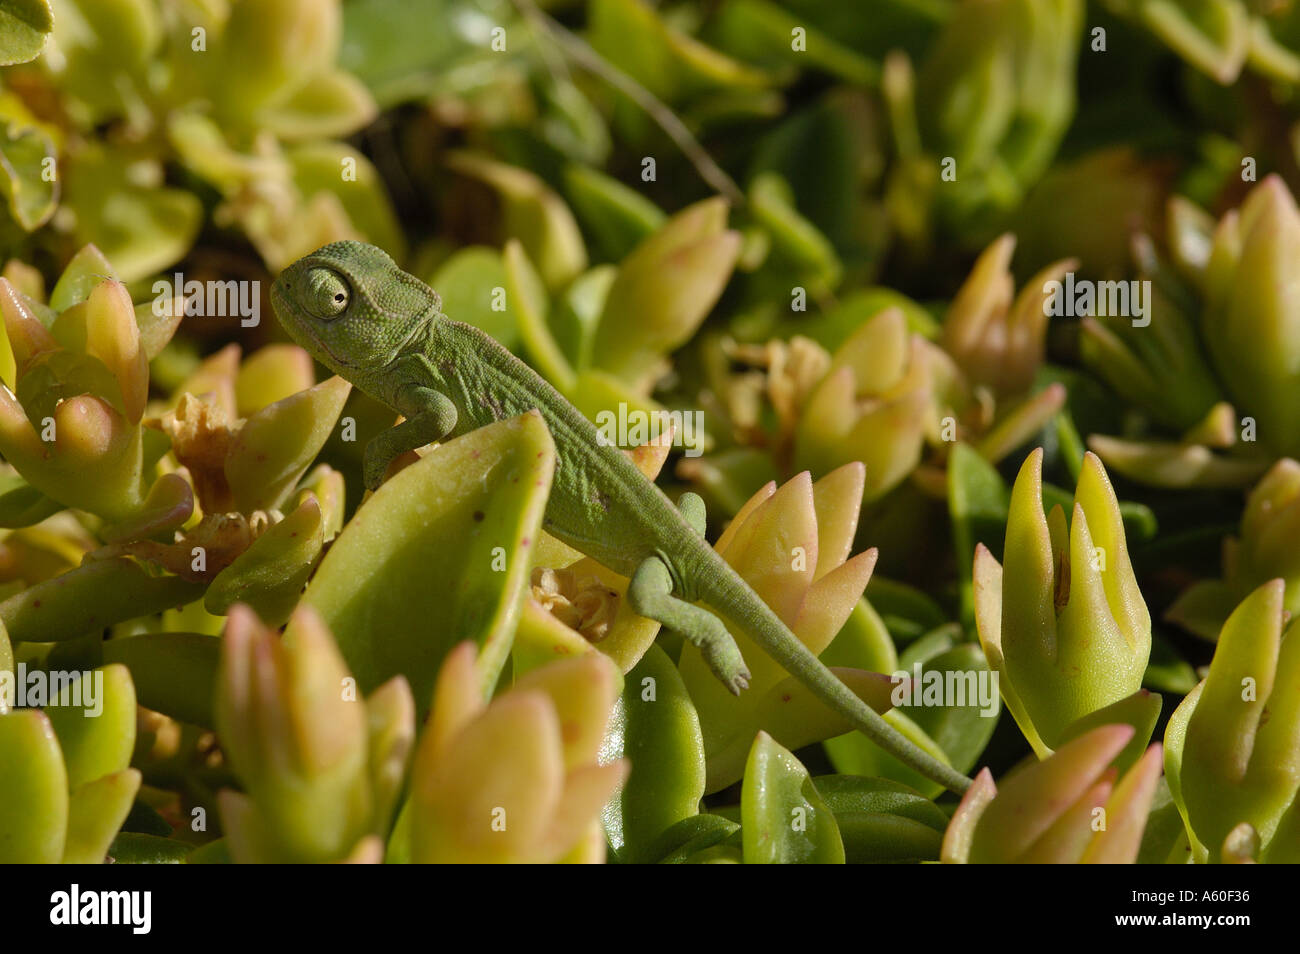 Chameleon on mesebryanthemum Stock Photo